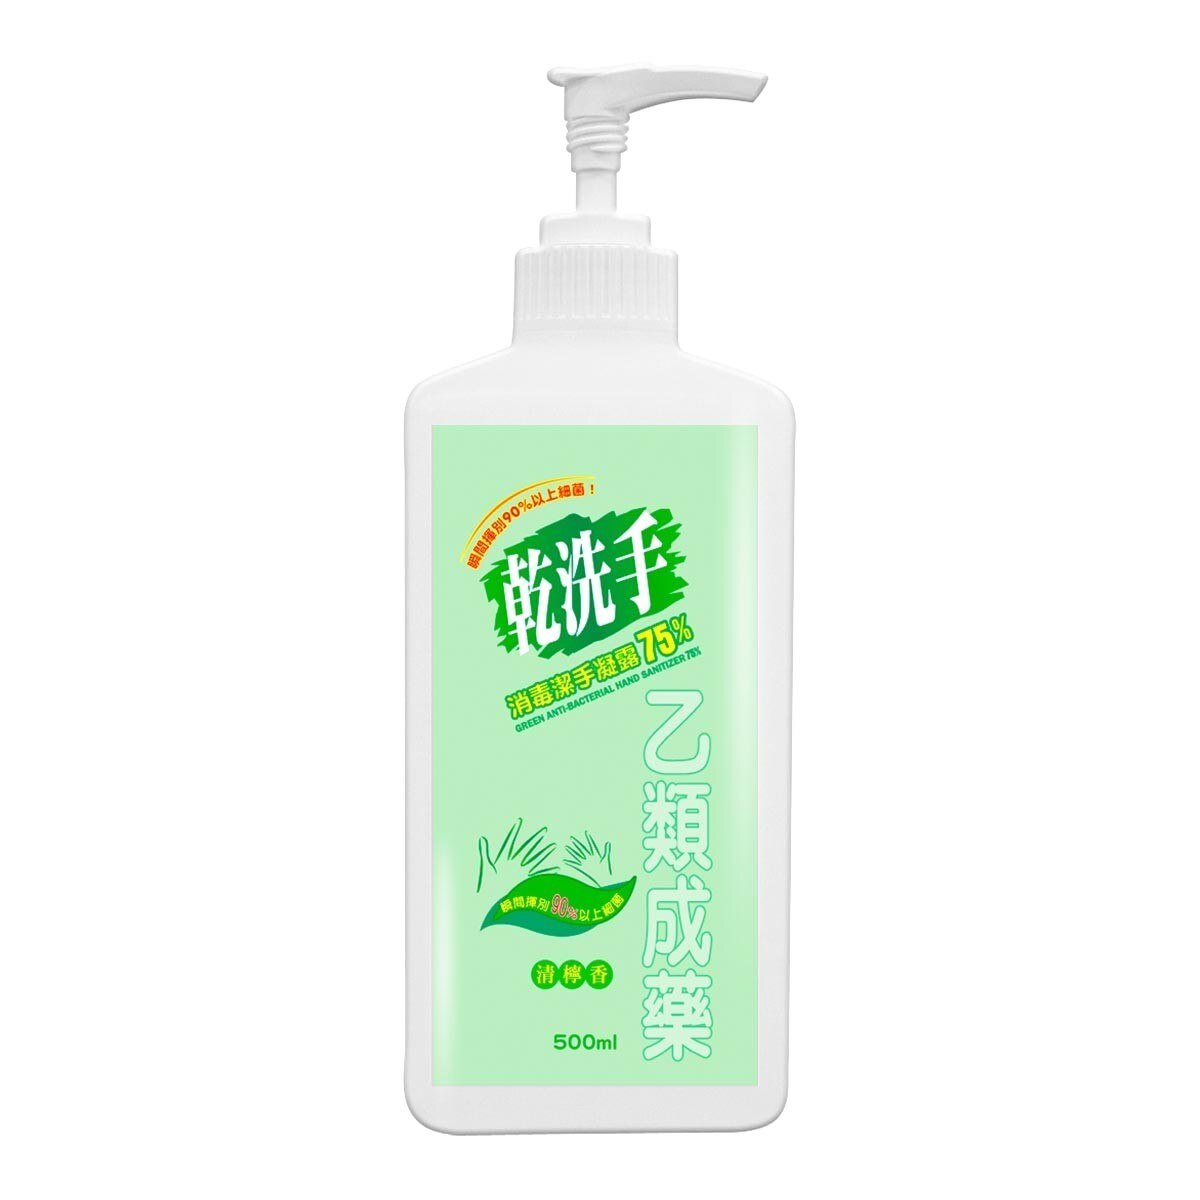 綠的 乾洗手消毒潔手凝露75% 500毫升